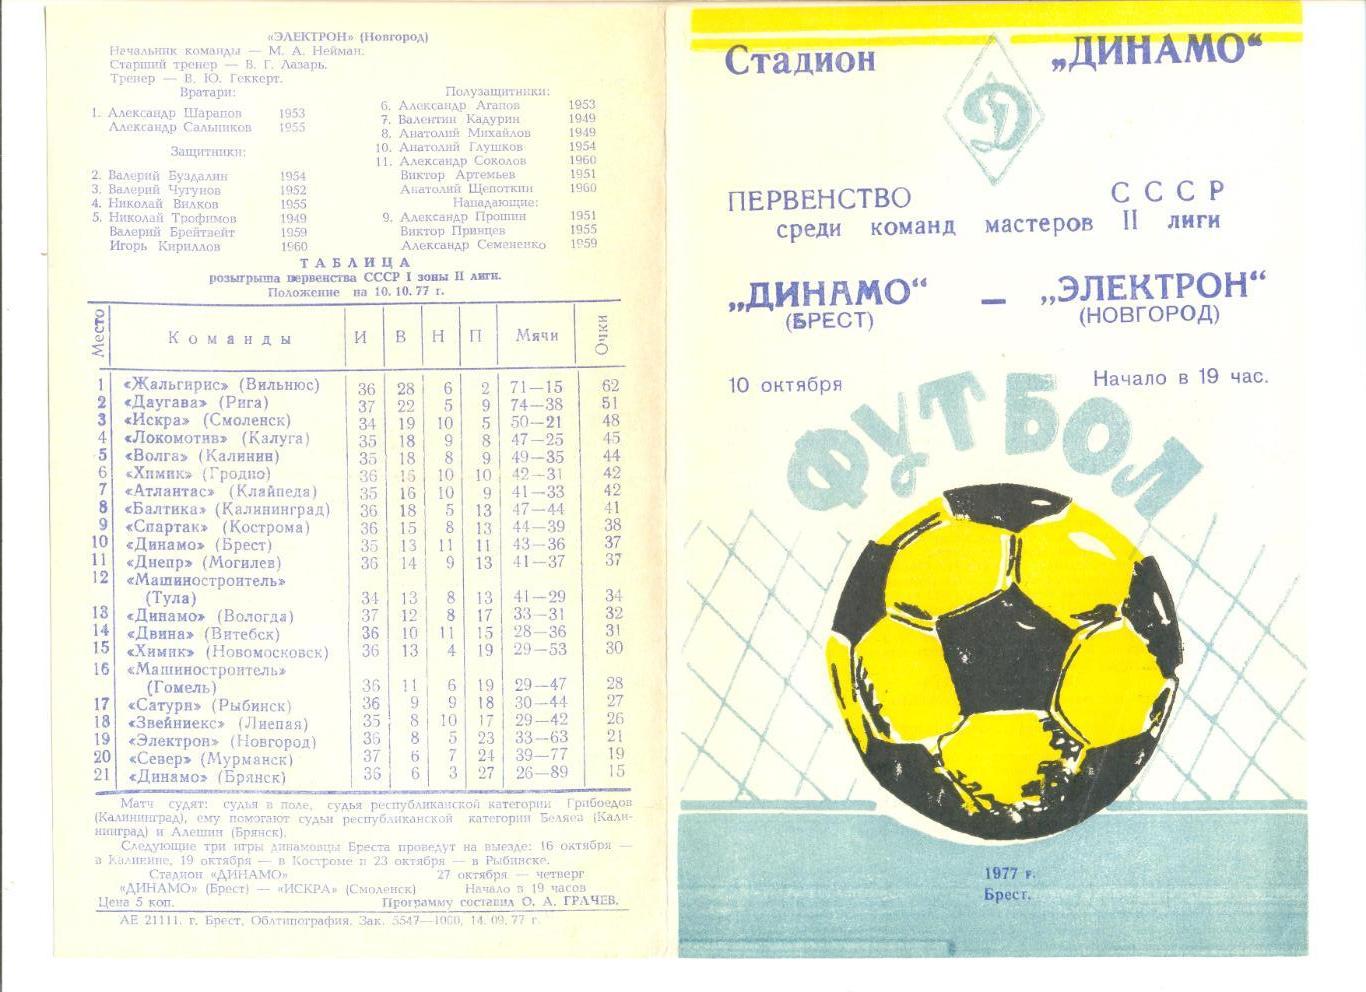 Динамо Брест - Электрон Новгород 10.10.1977 г.